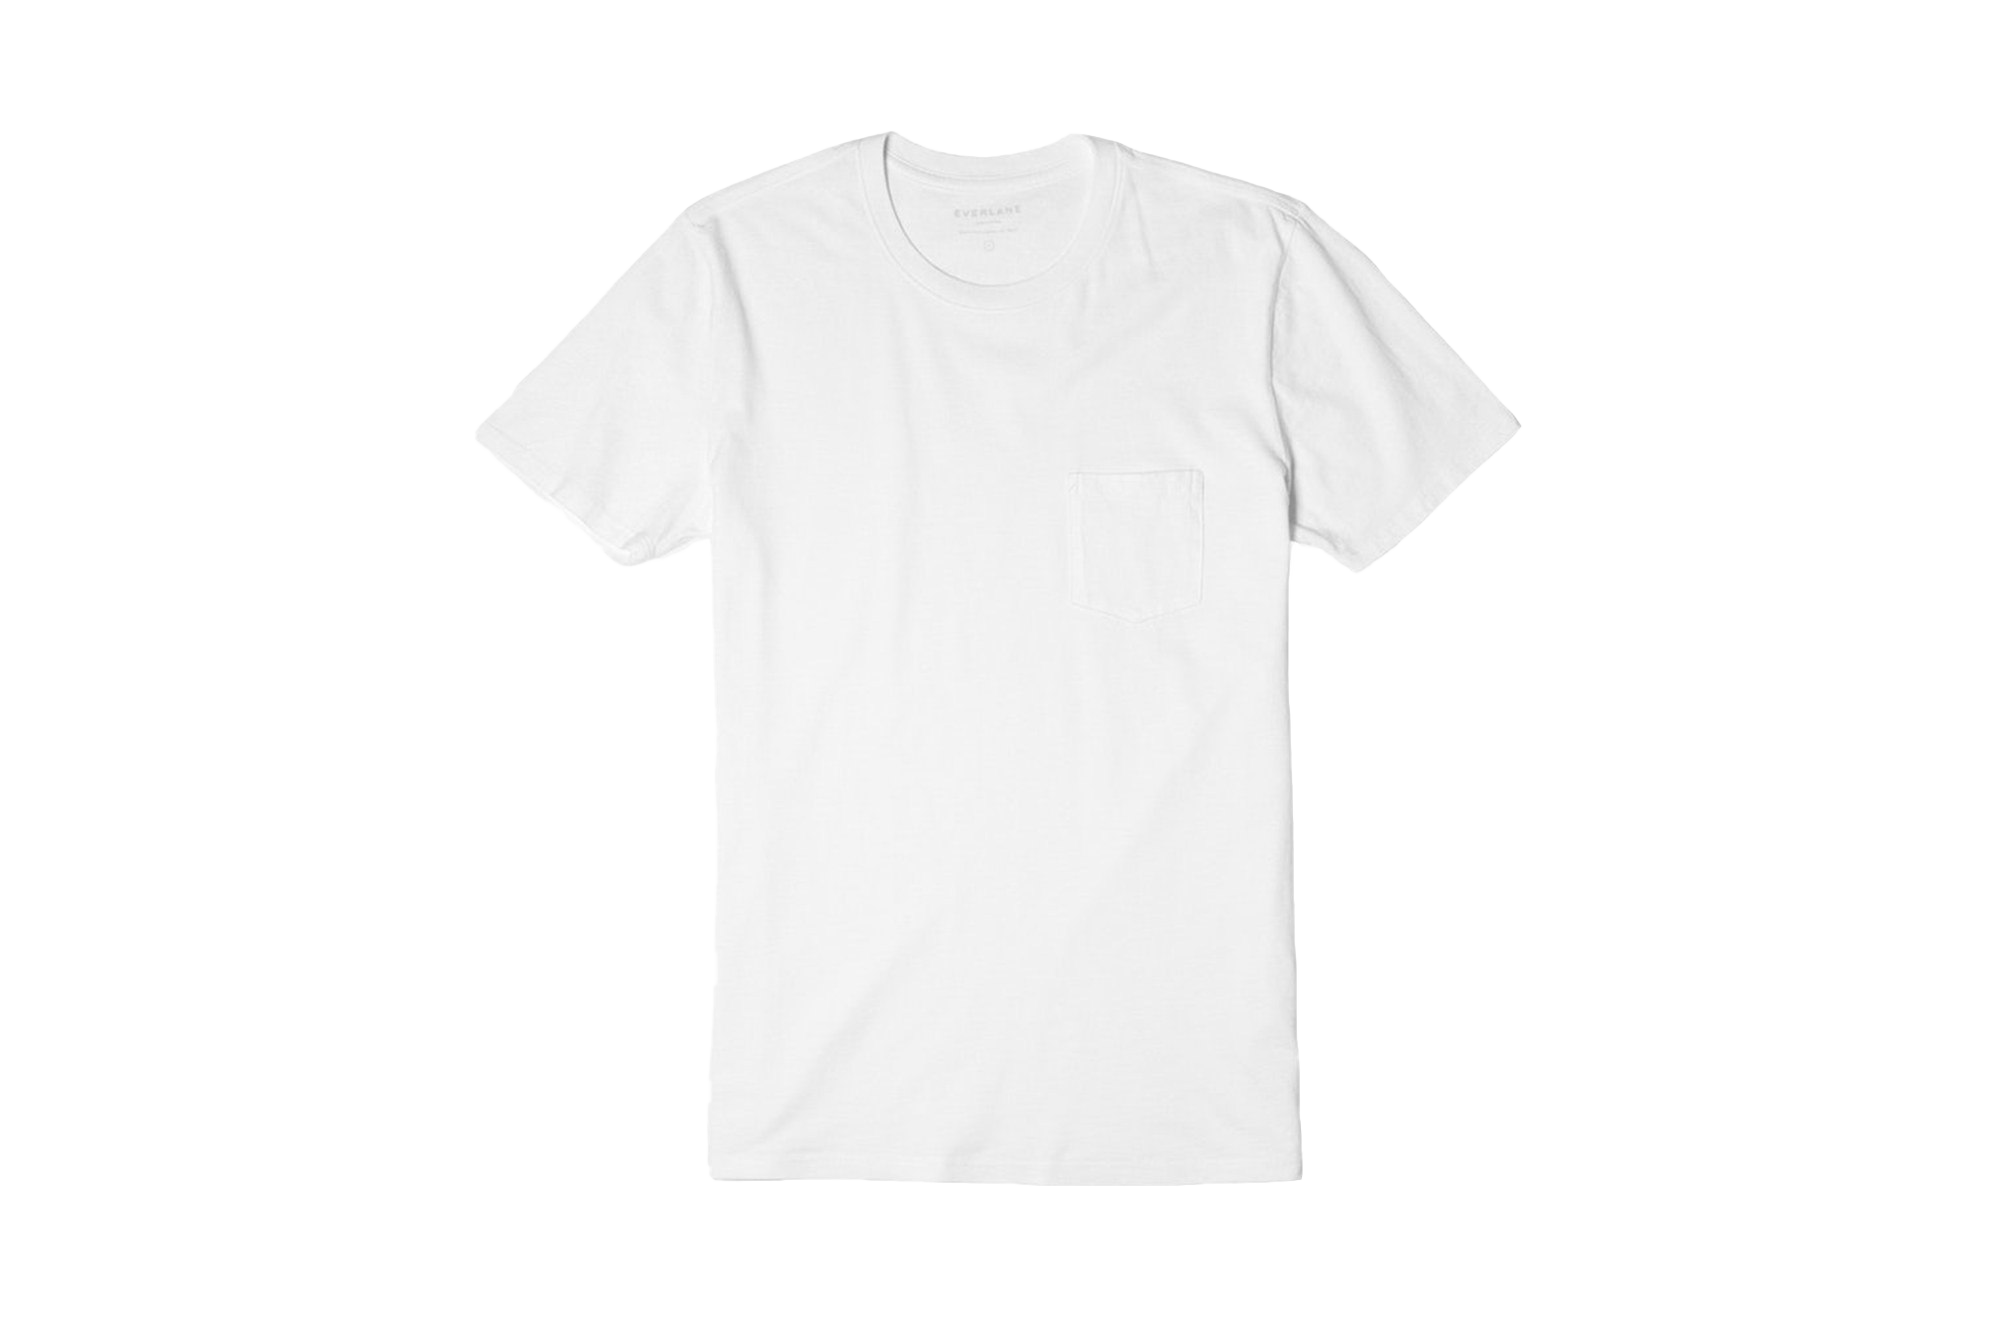 Plain White T-Shirt PNG Image